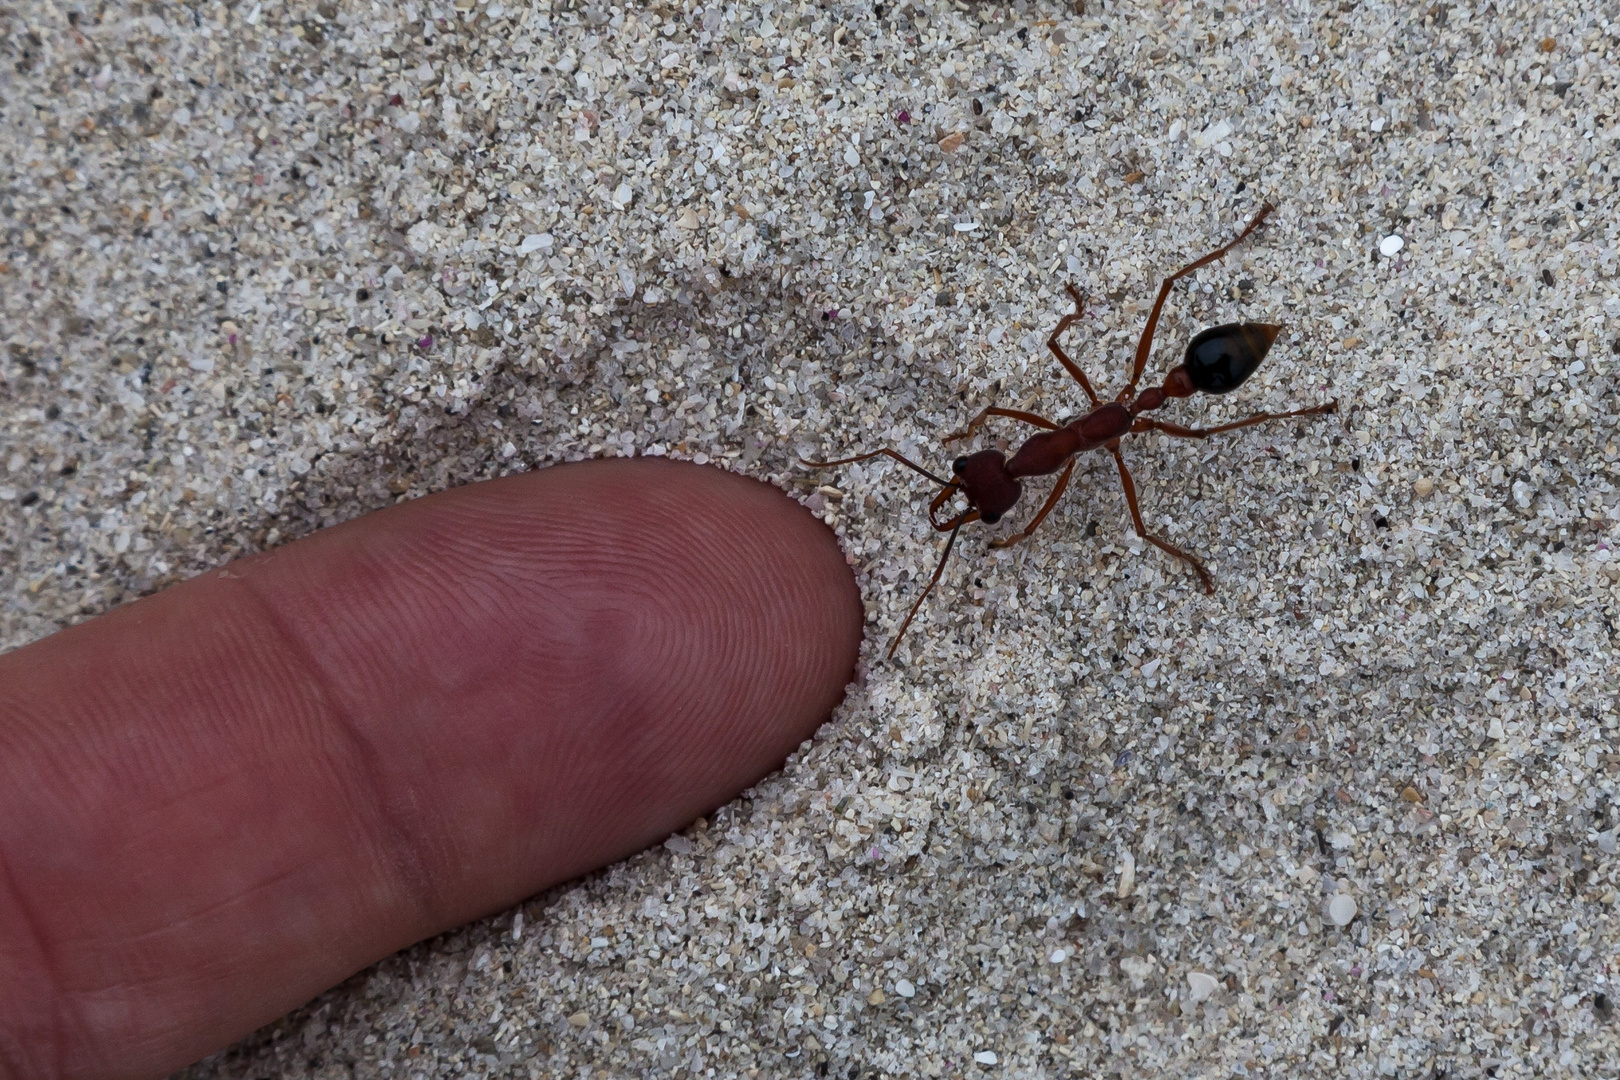 Bull Ant im Sand